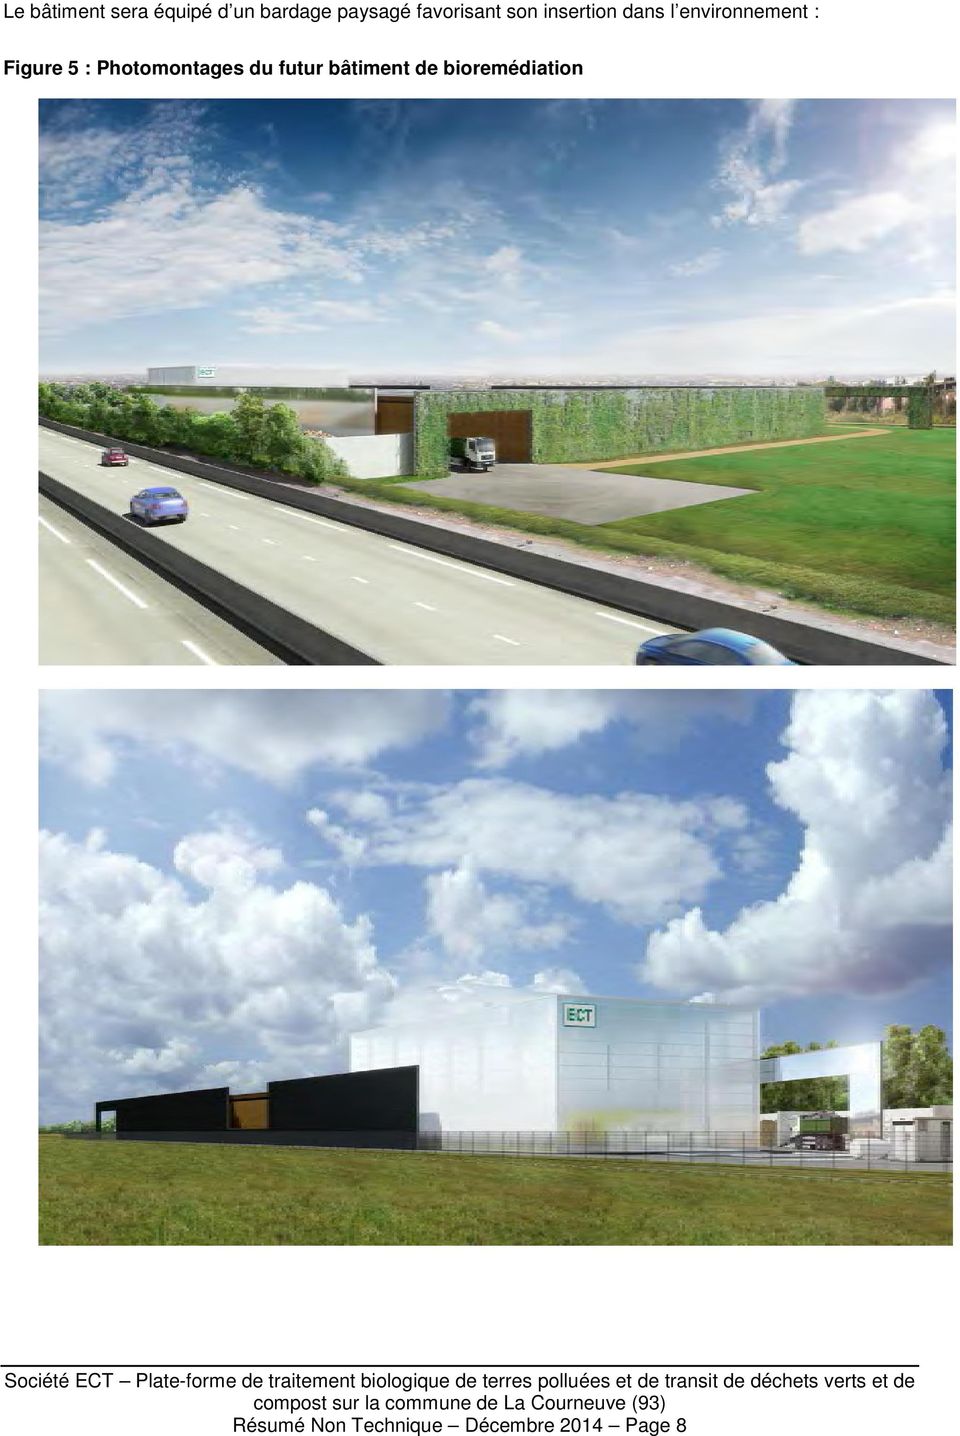 Figure 5 : Photomontages du futur bâtiment de